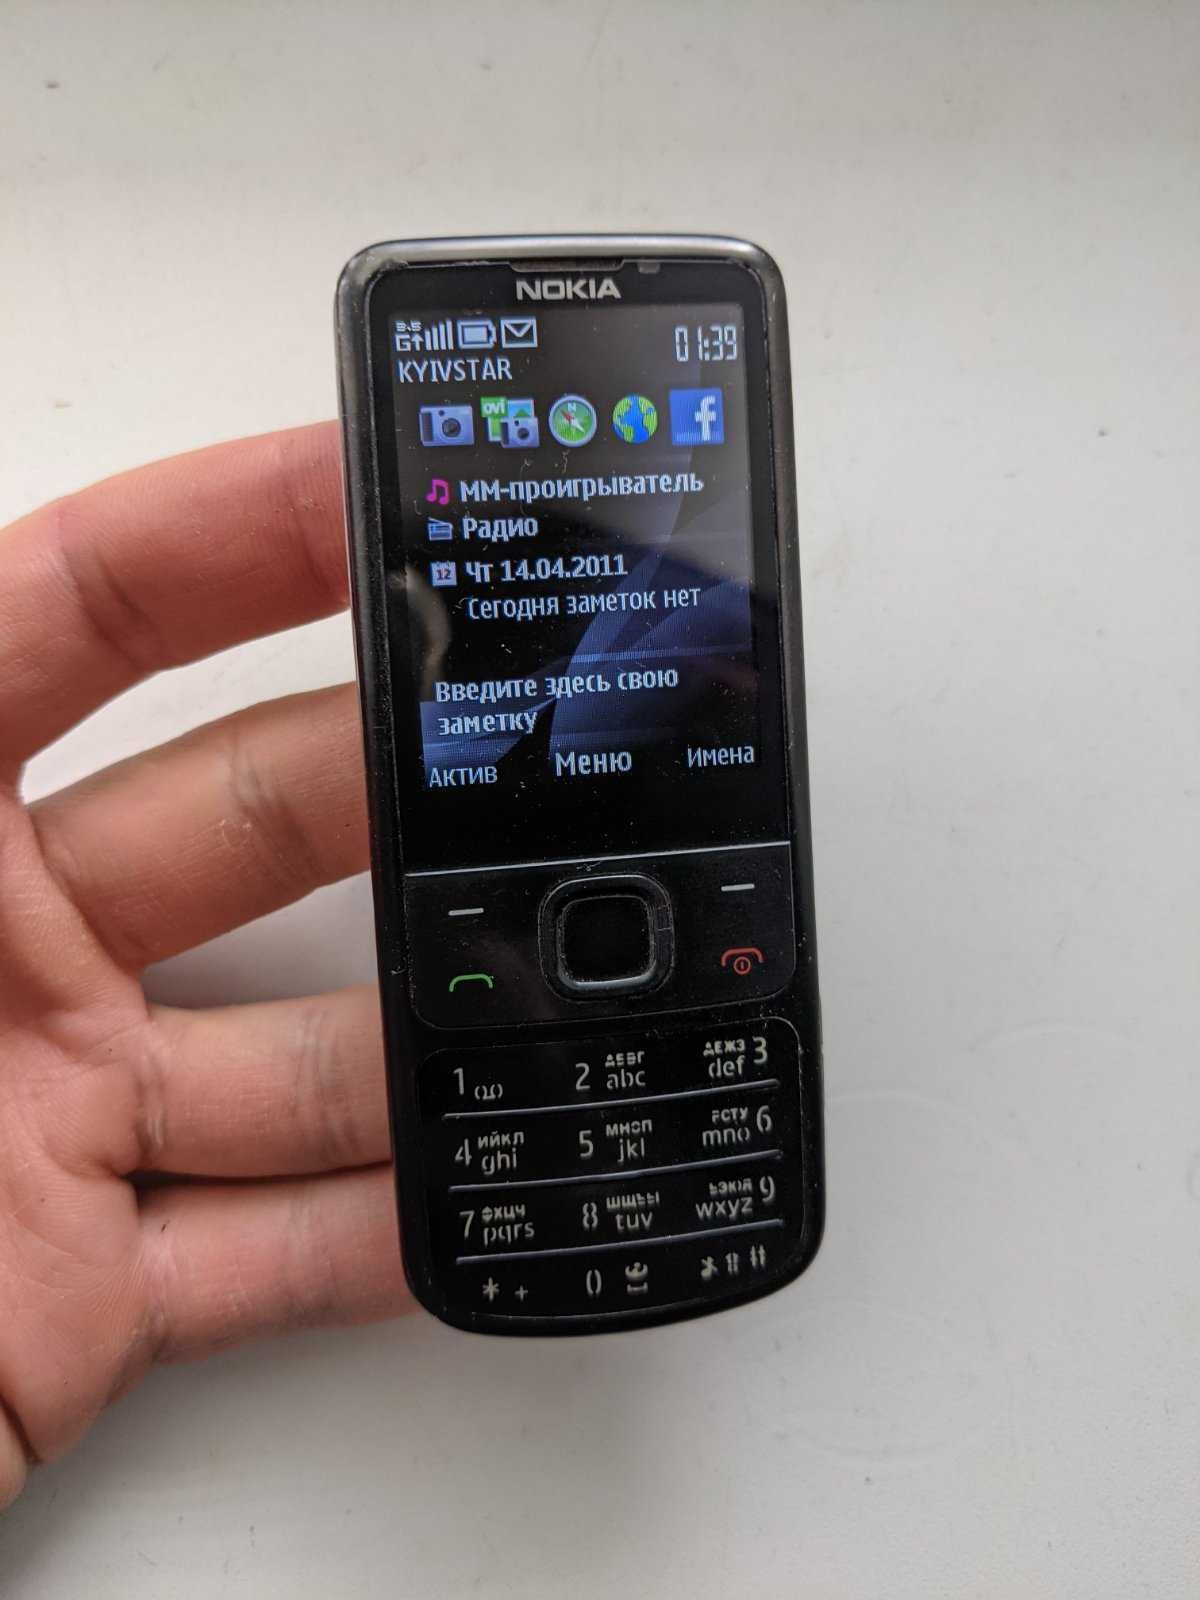 Продам Nokia 6700 classic в хорошем состоянии